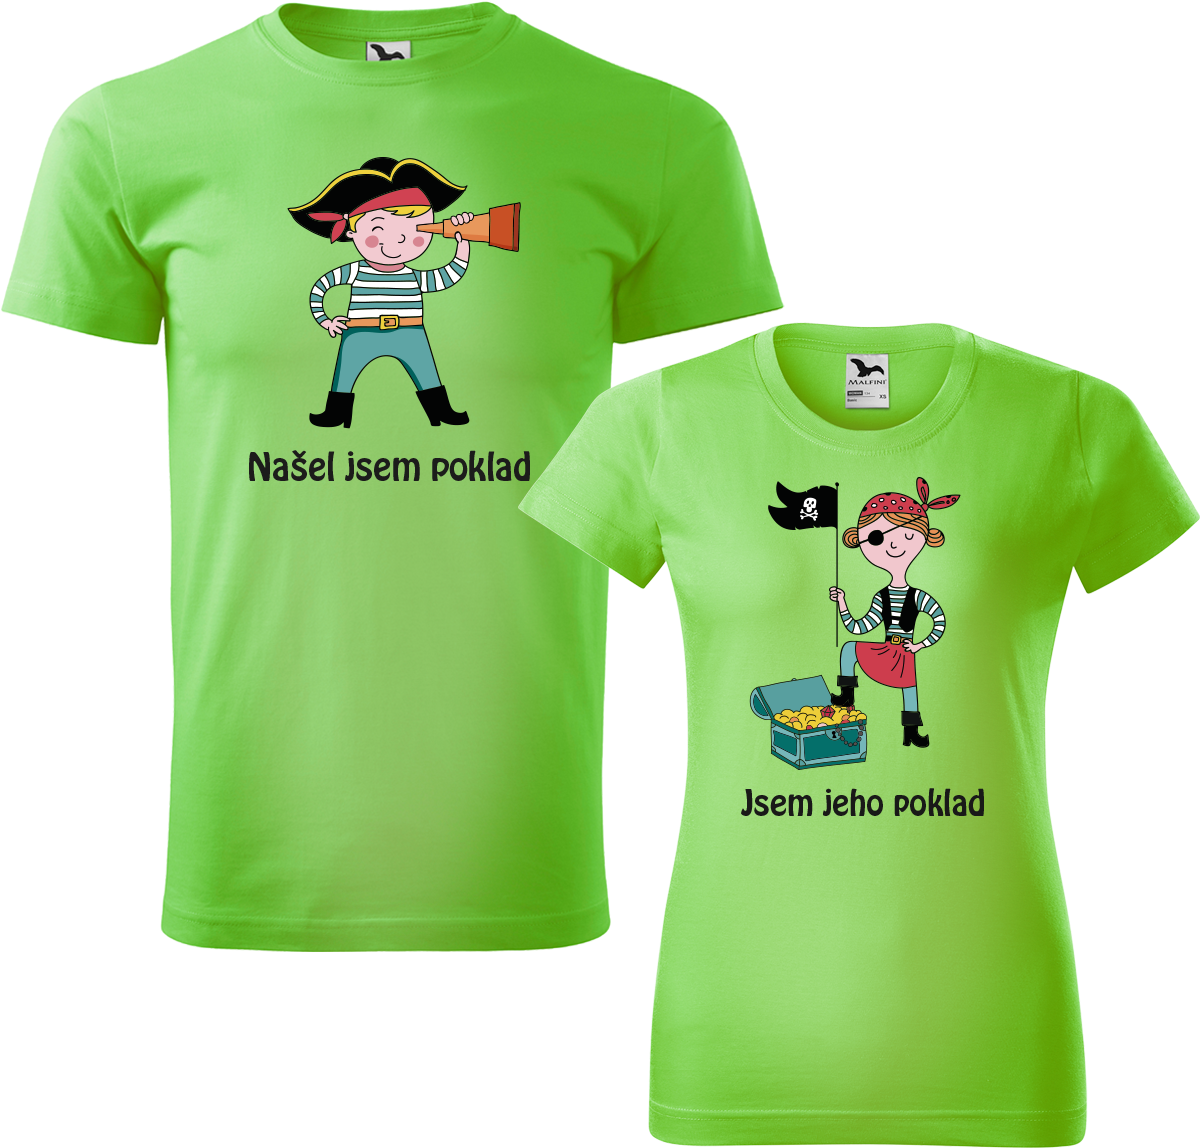 Trička pro páry - Poklad Barva: Apple Green (92), Velikost dámské tričko: S, Velikost pánské tričko: S